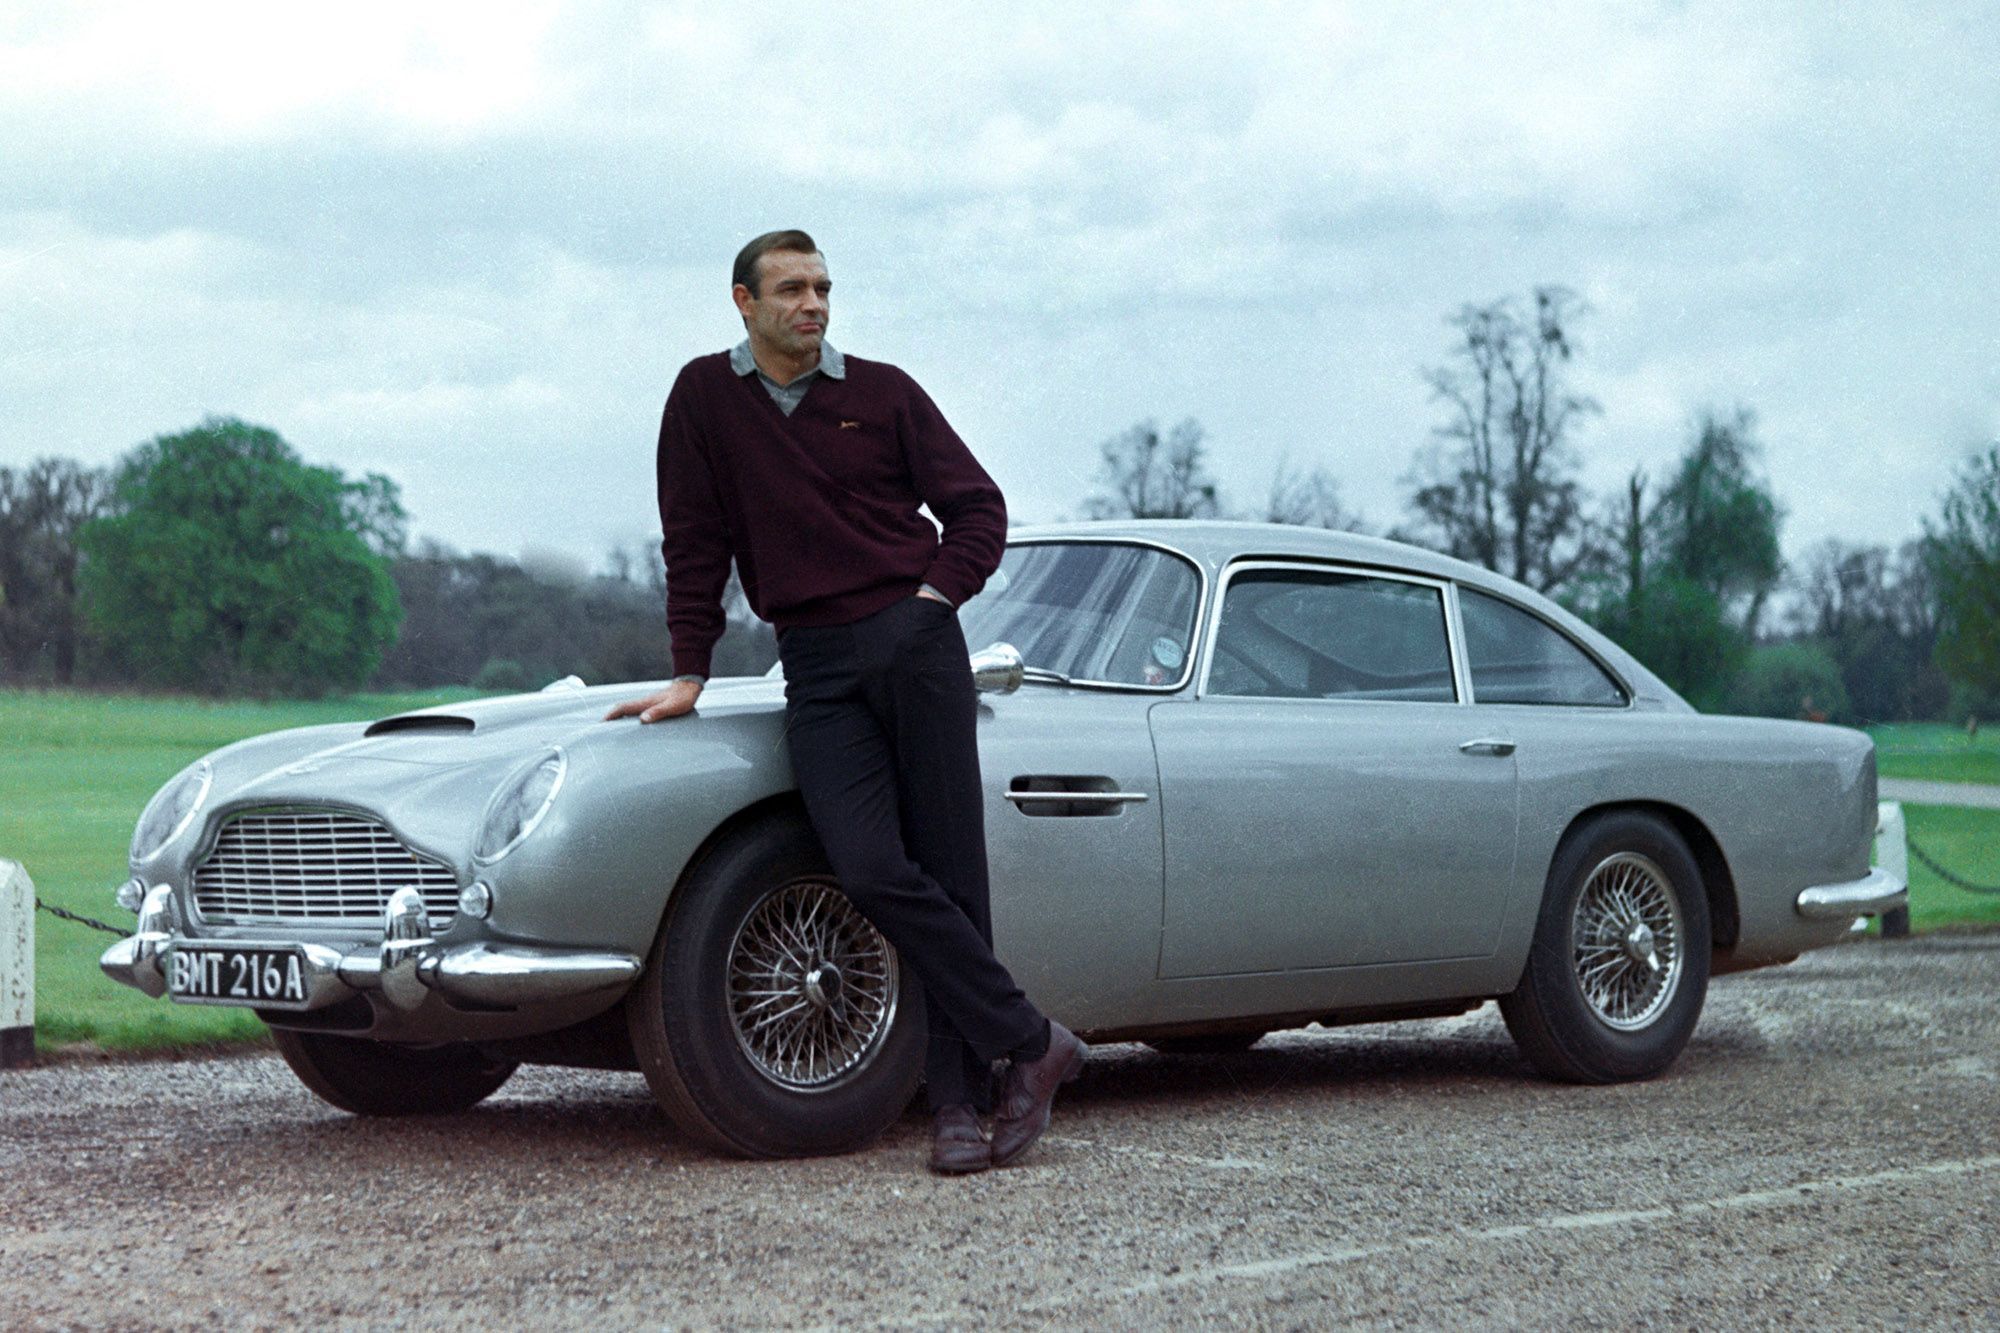 James Bond's Aston Martin DB5 from Goldfinger